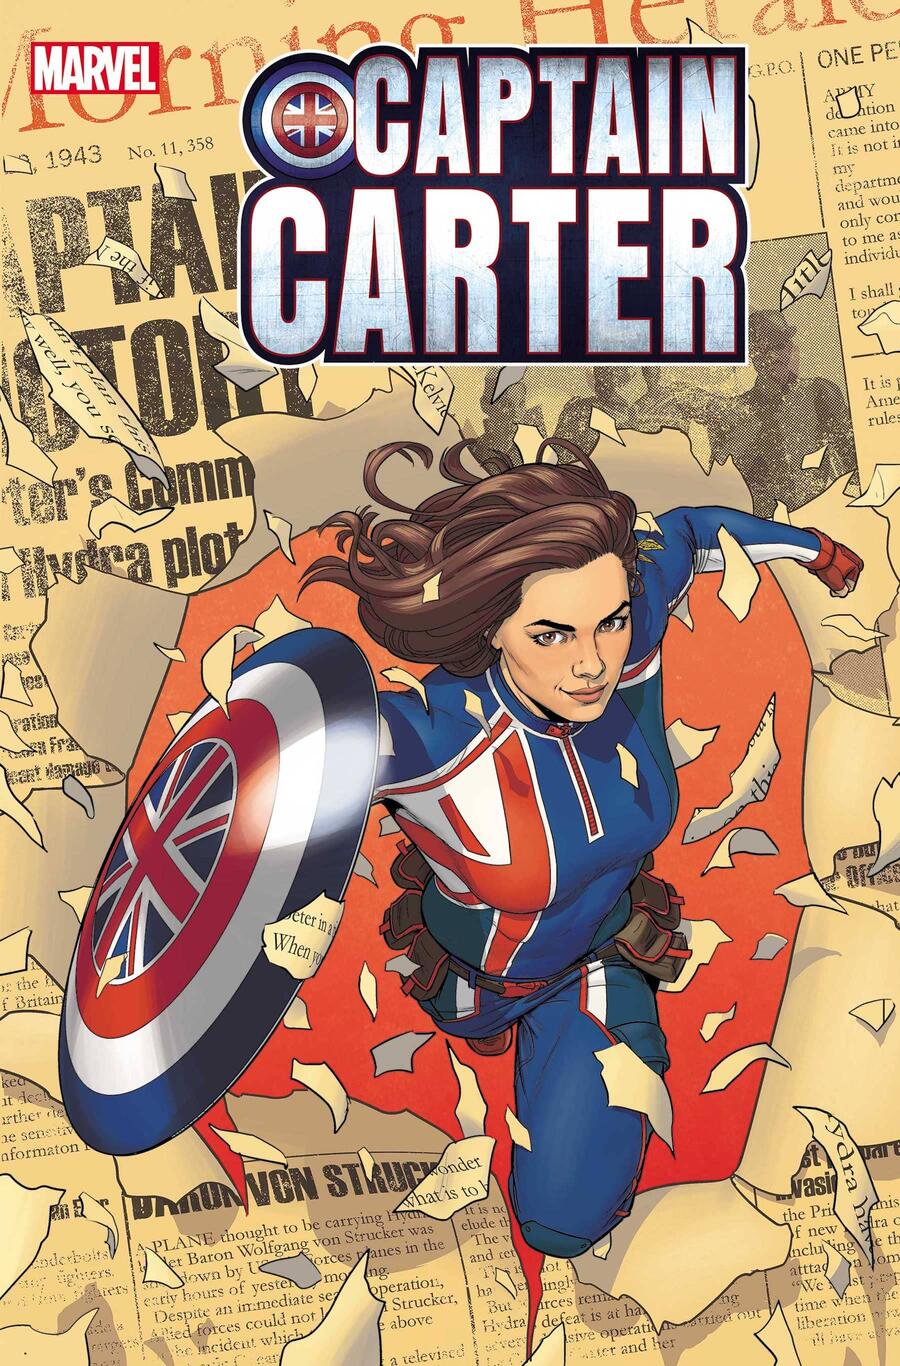 Captain Carter #1